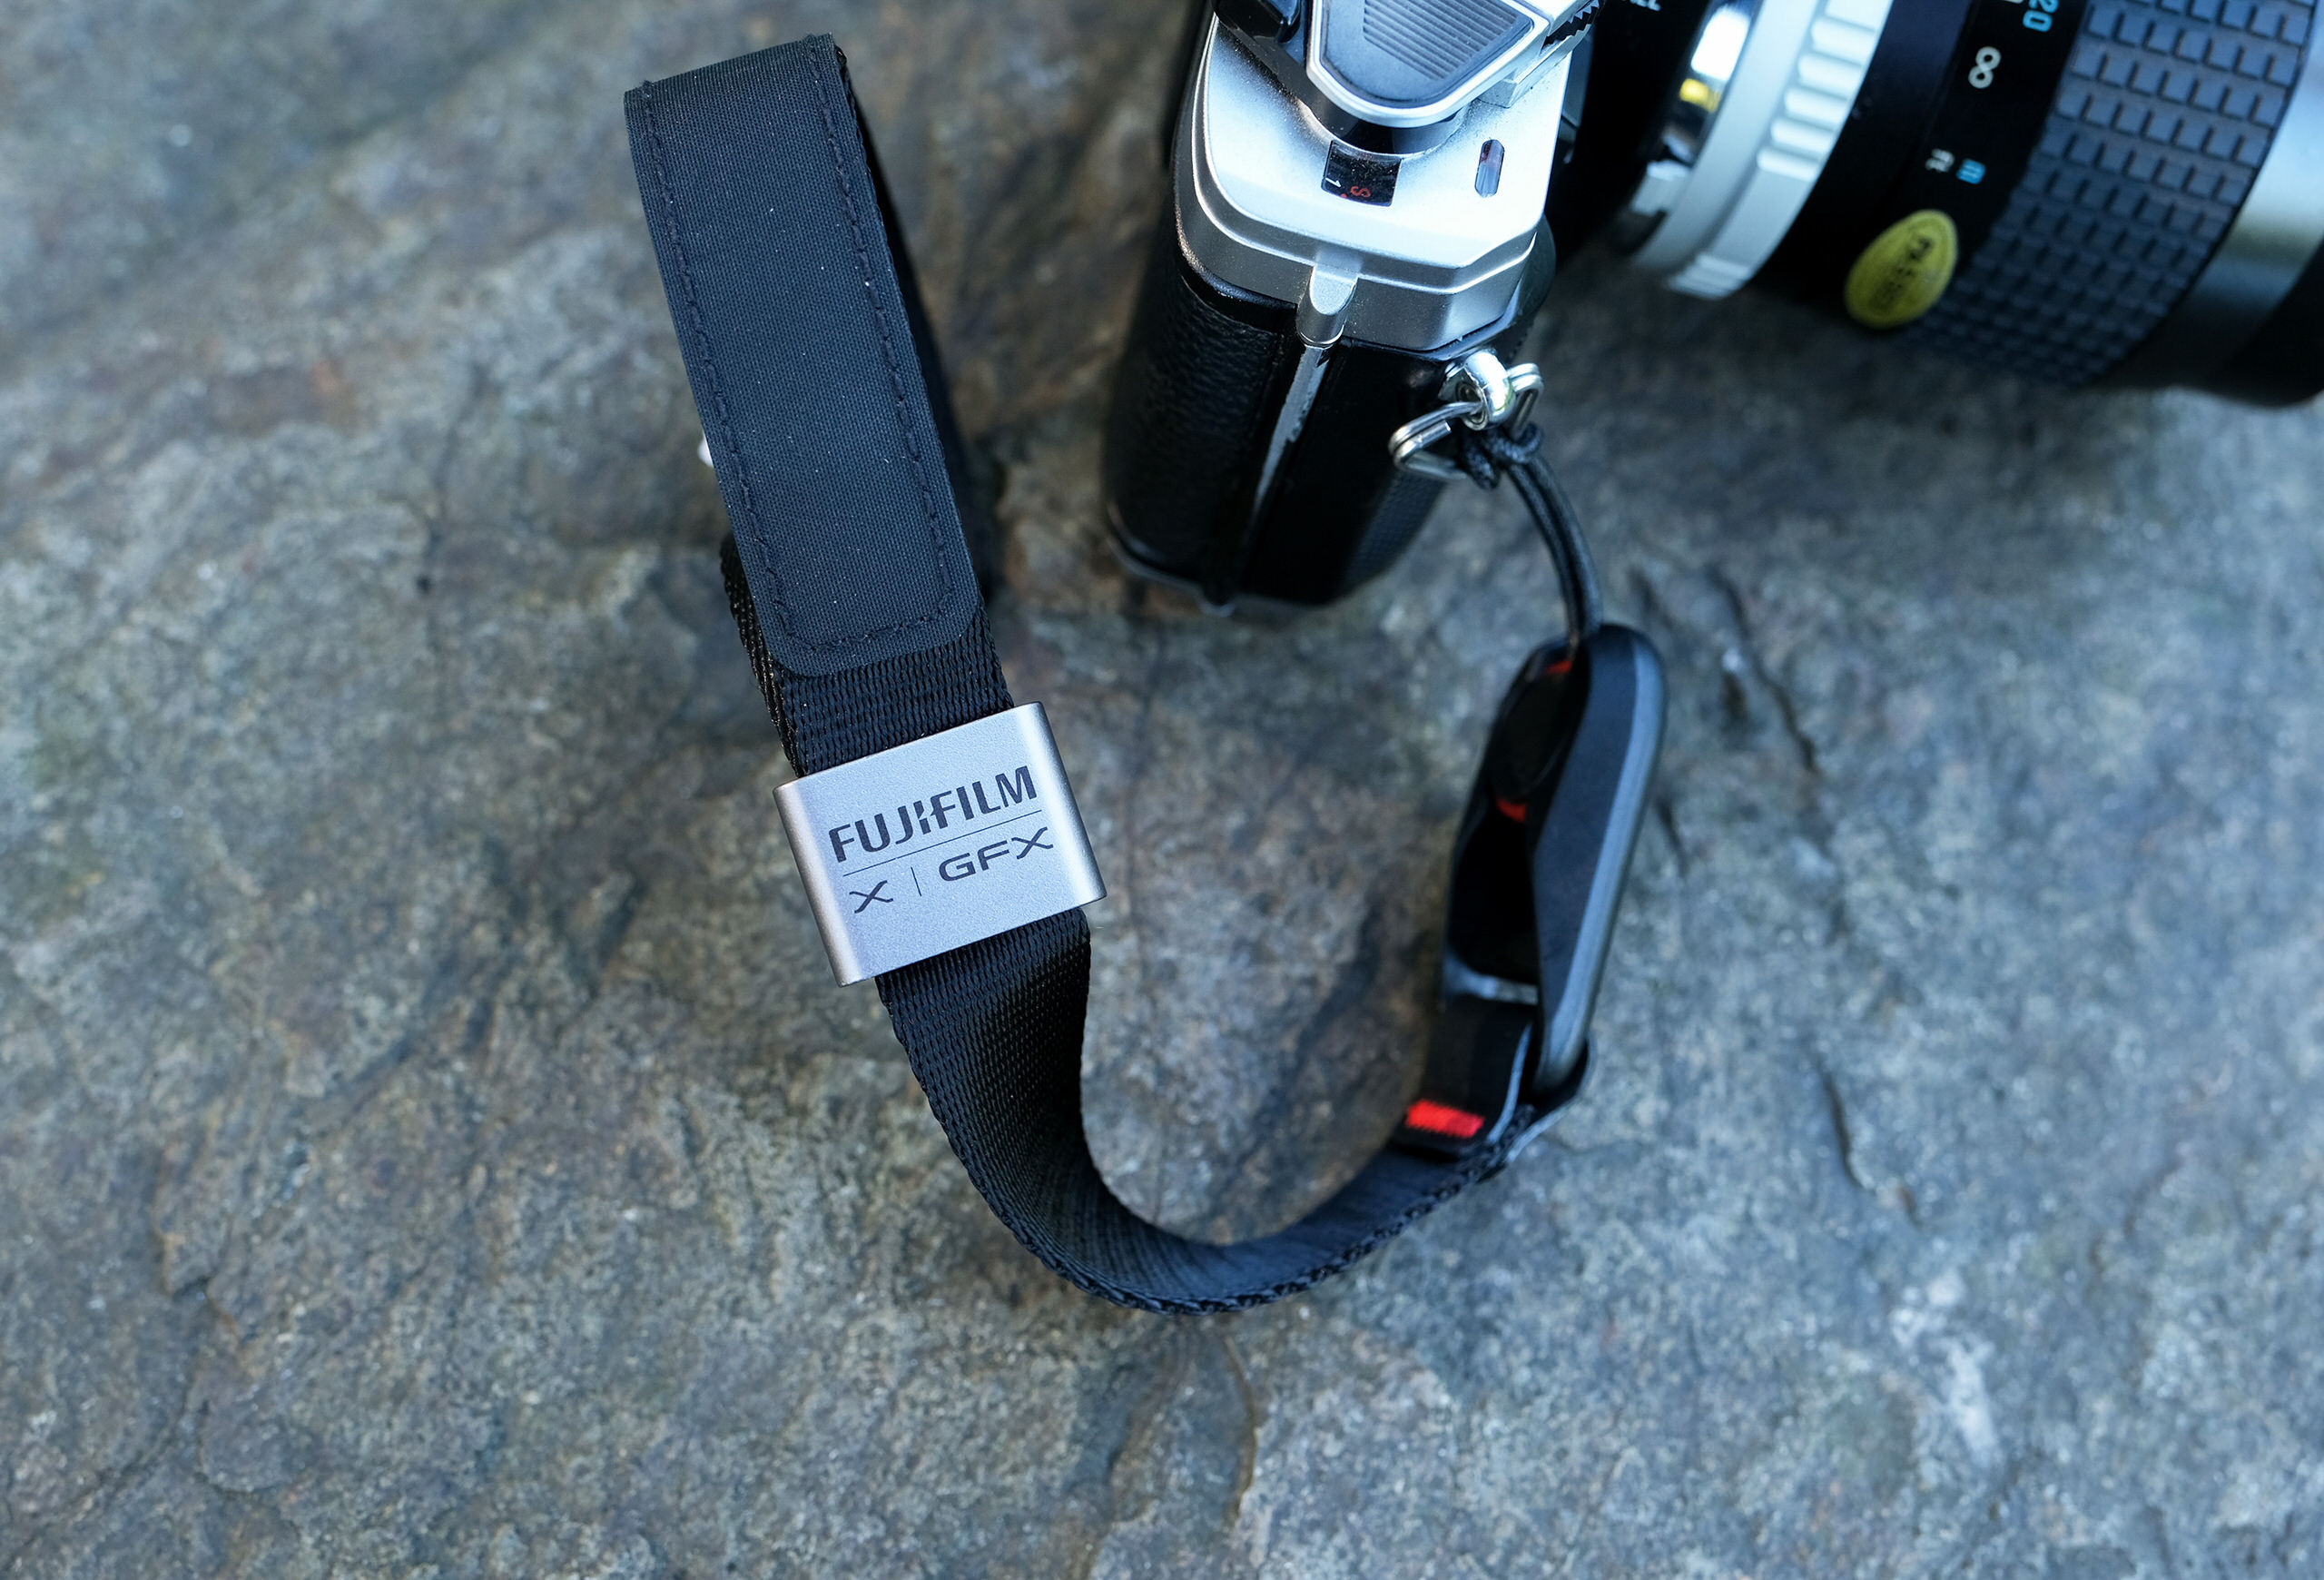 Peak Design tung phiên bản giới hạn dây đeo máy ảnh hợp tác với Fujifilm